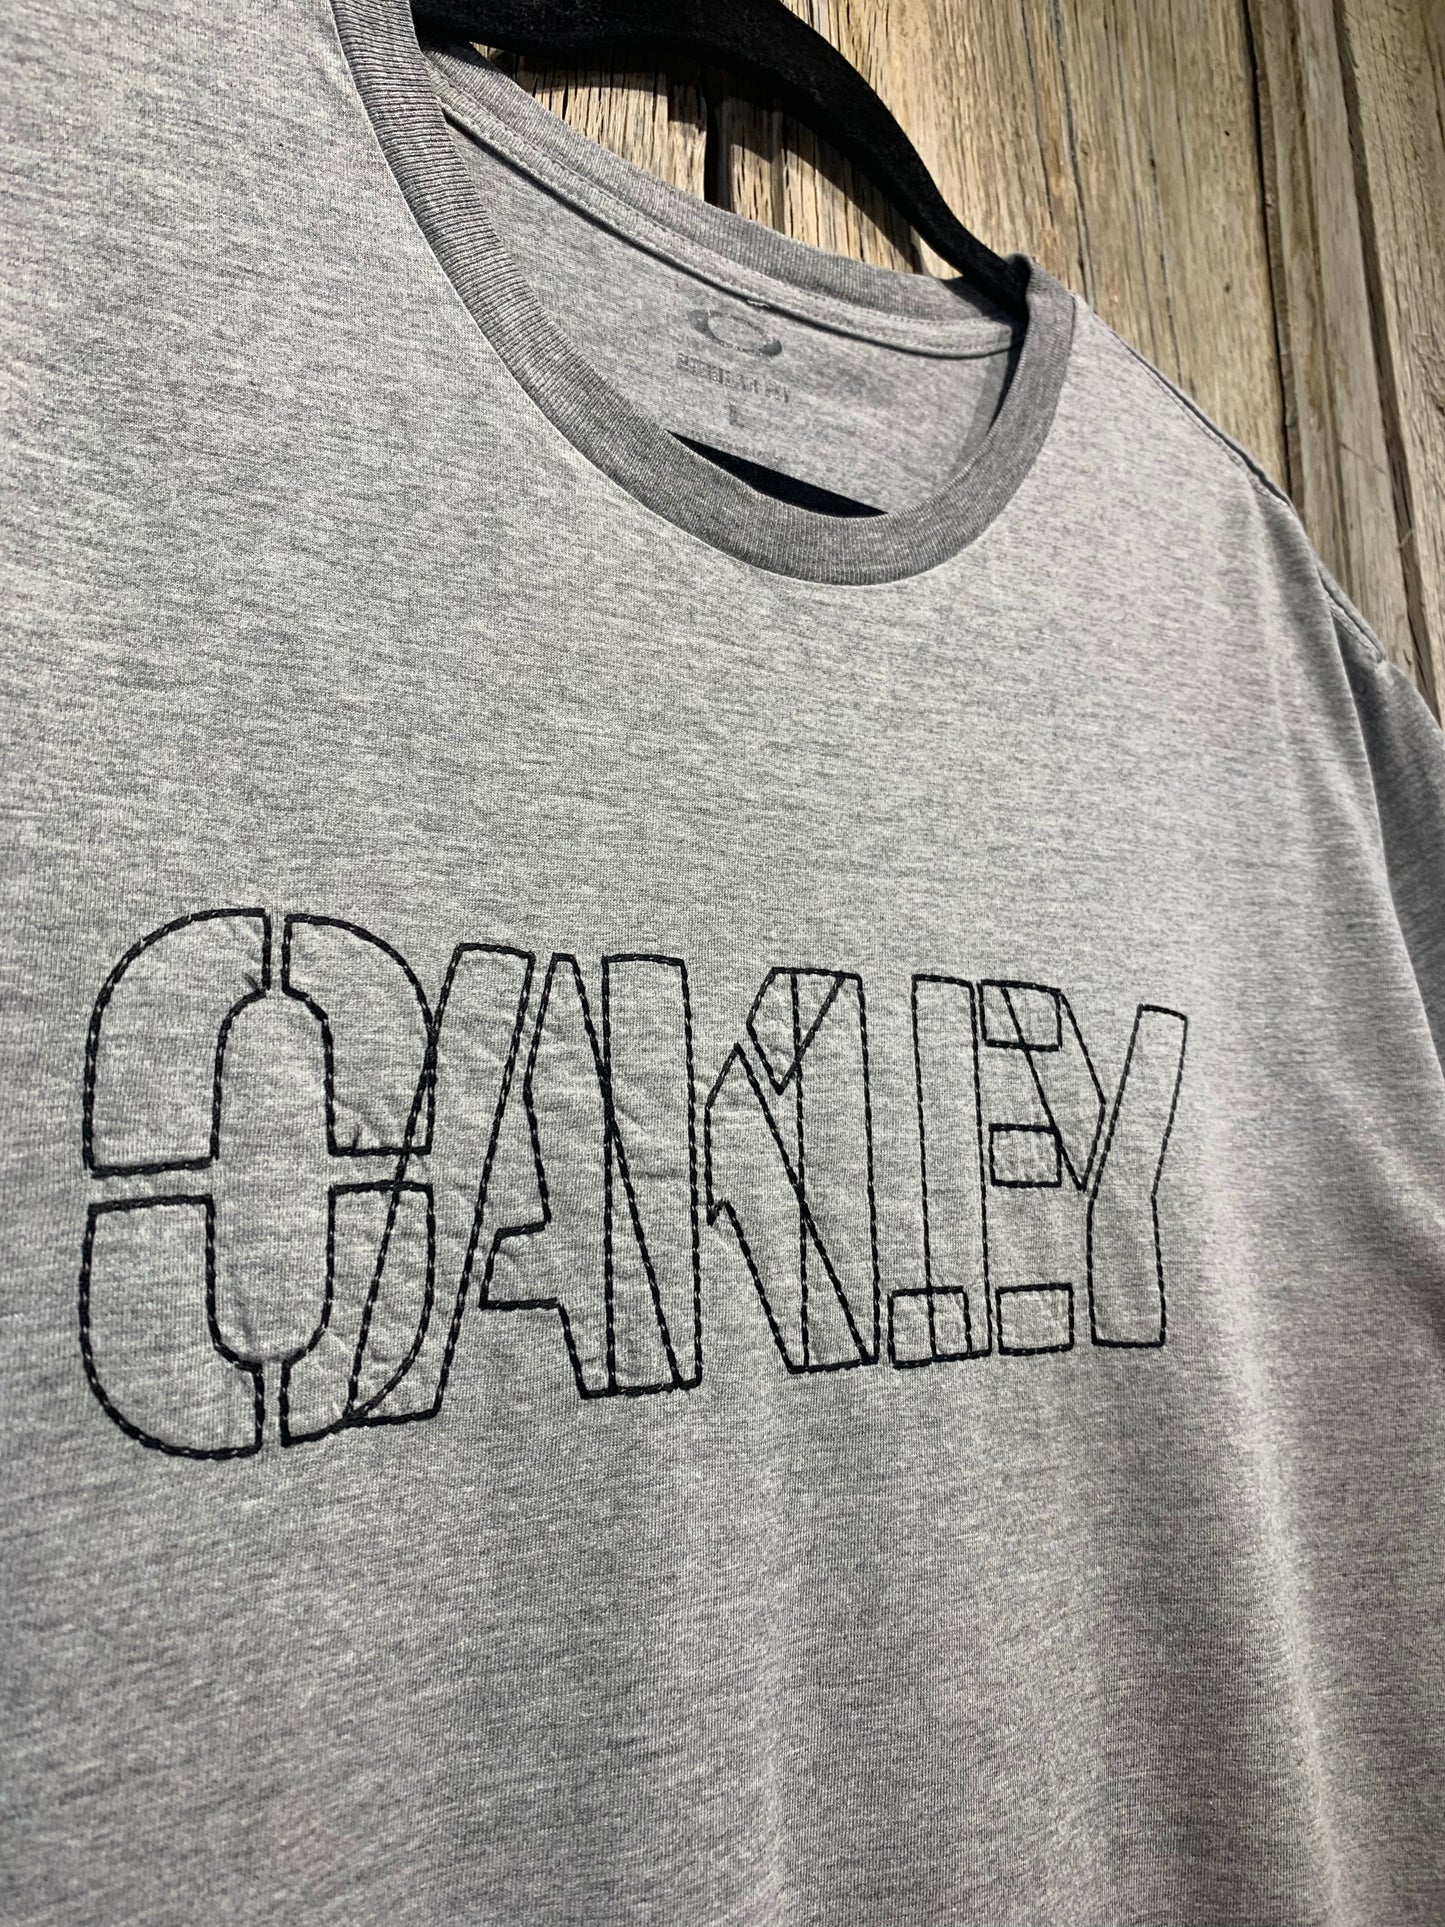 Grey Oakley Stitch Logo Tee